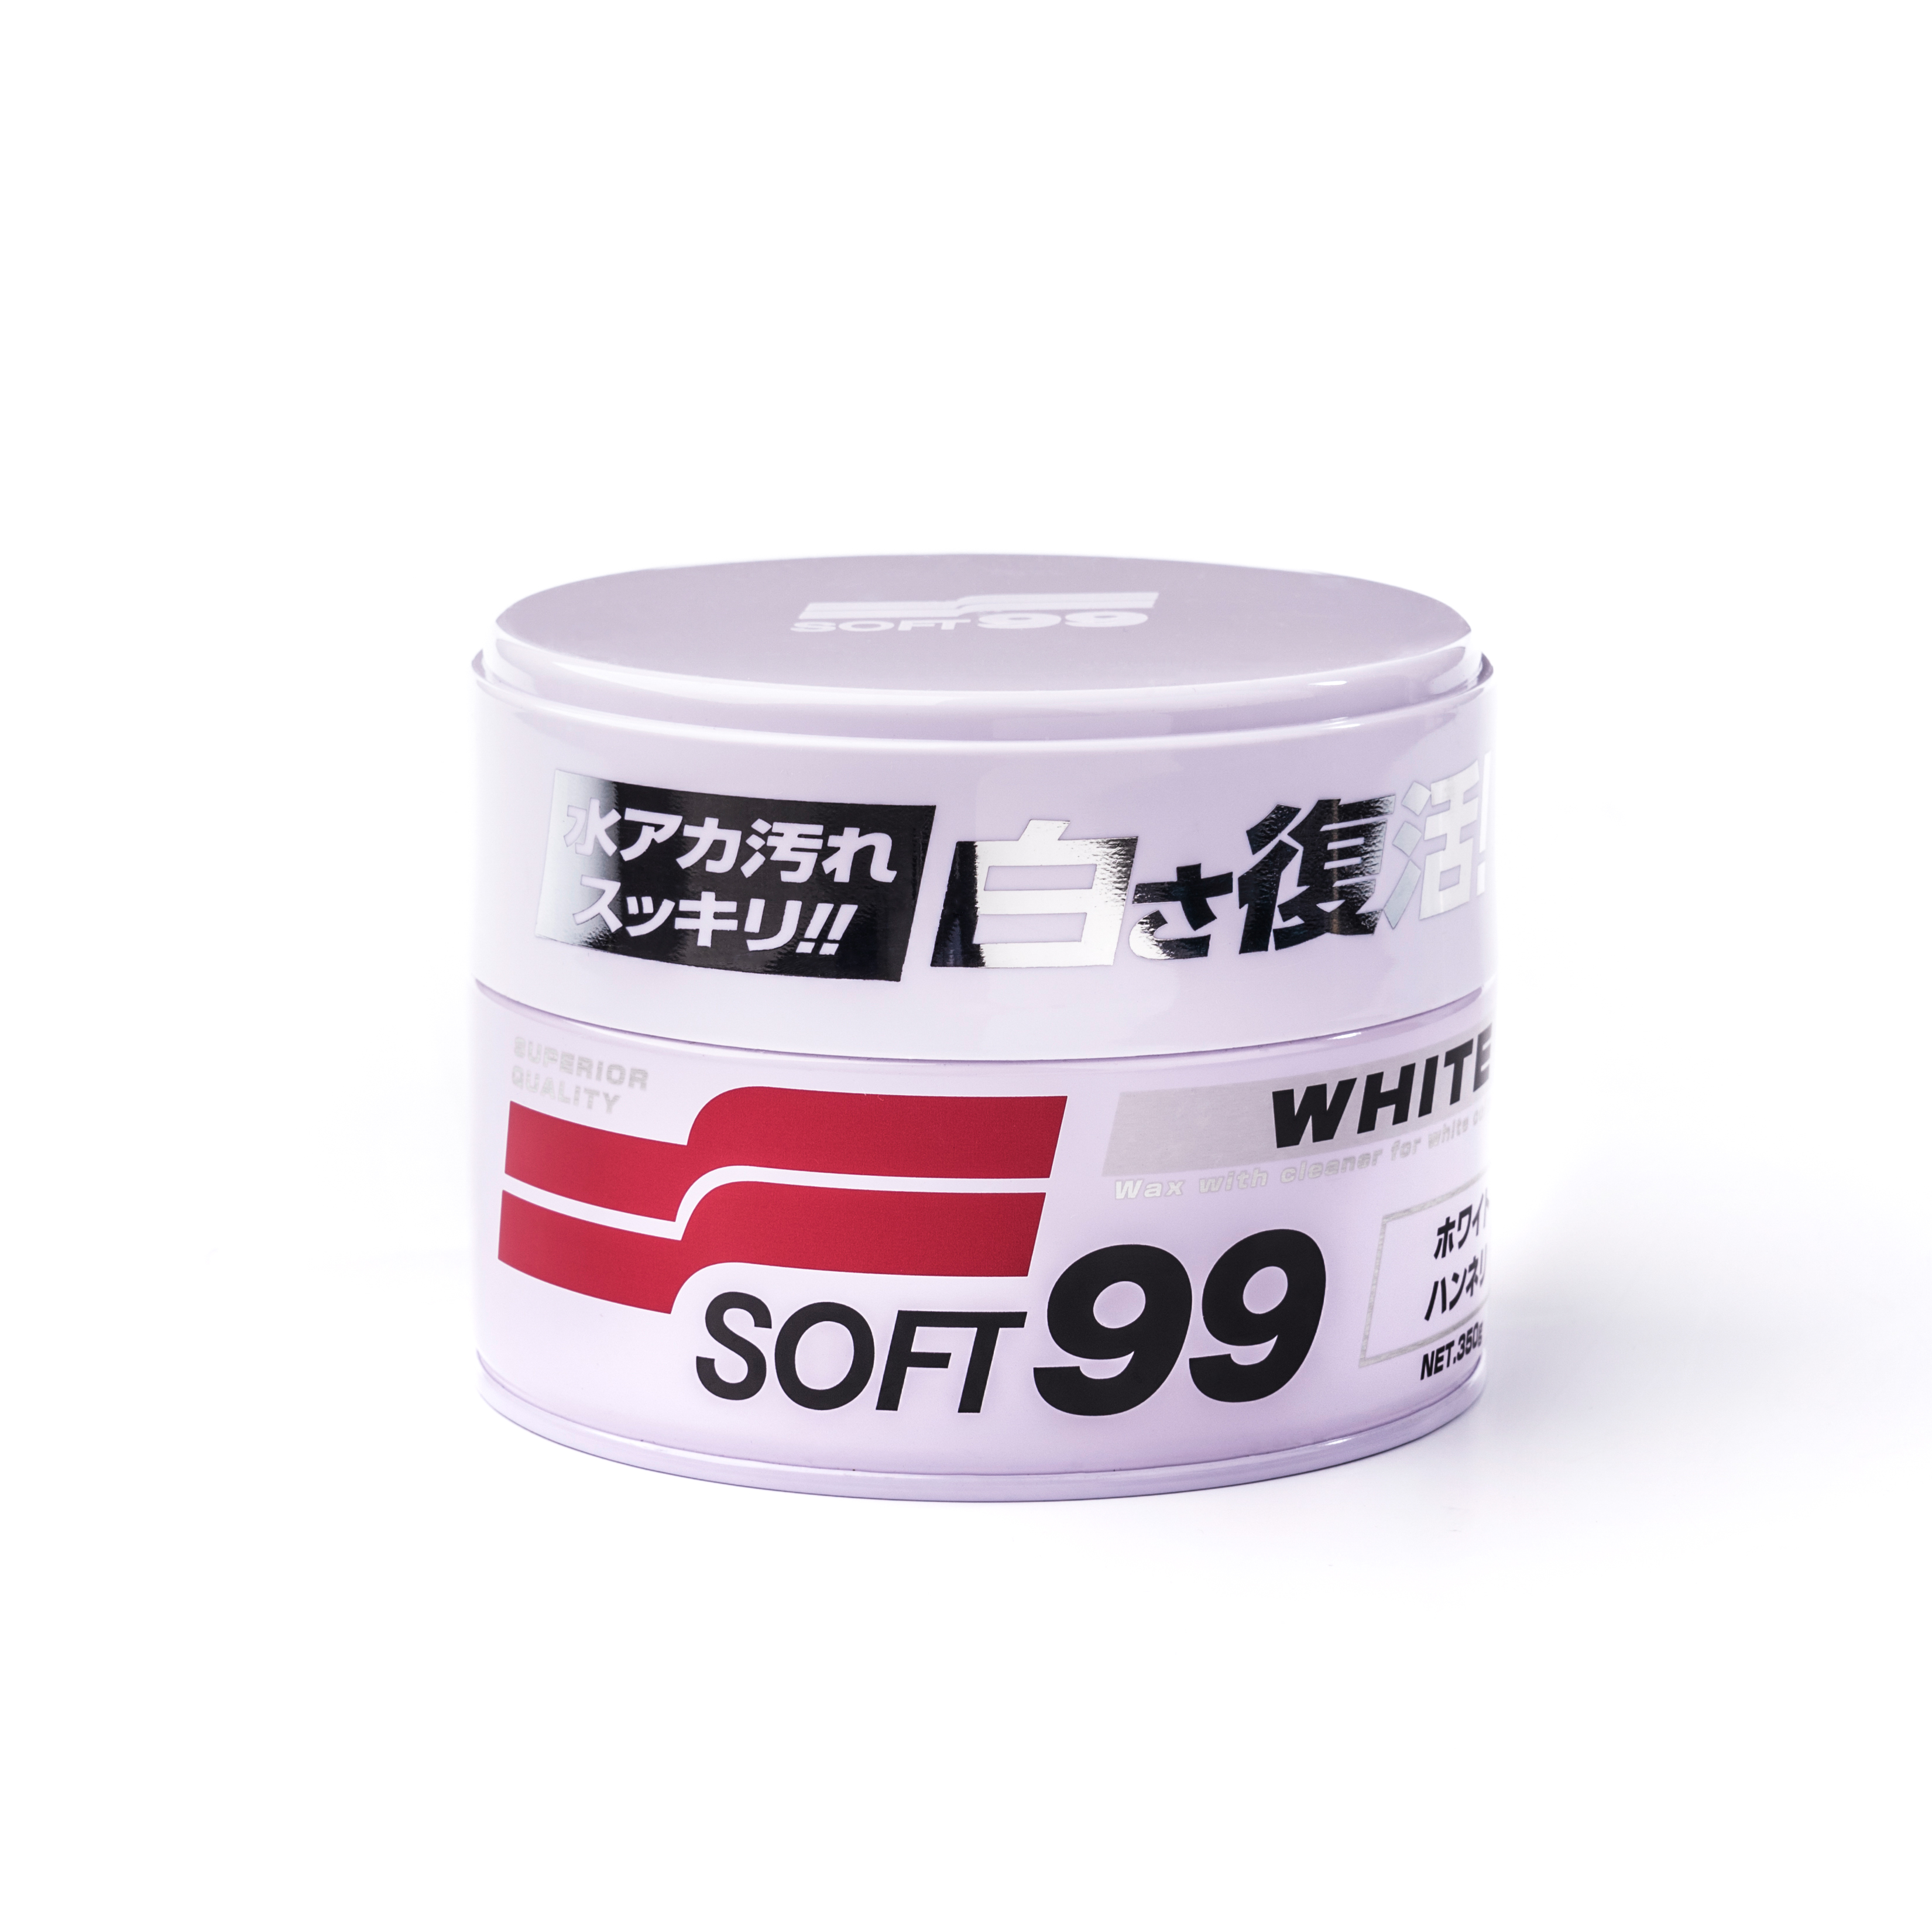 Bilvoks Soft99 White Soft Wax, 350 g, Soft99 White Soft Wax